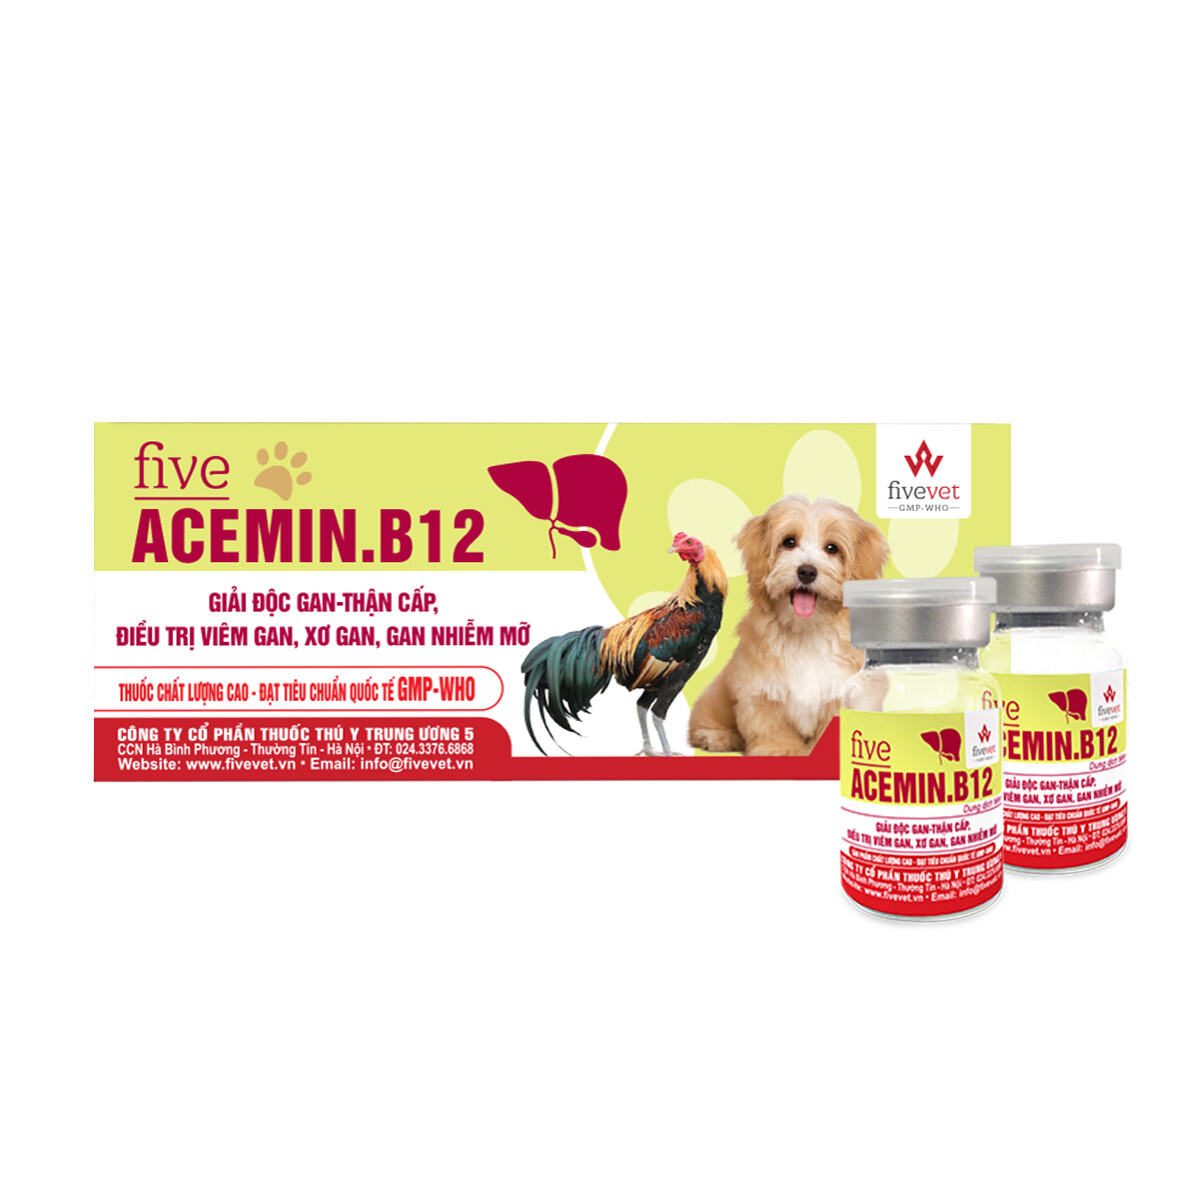 Chai 10ml dung dịch tiêm bắp acemin.b12, giải độc gan, thận cấp